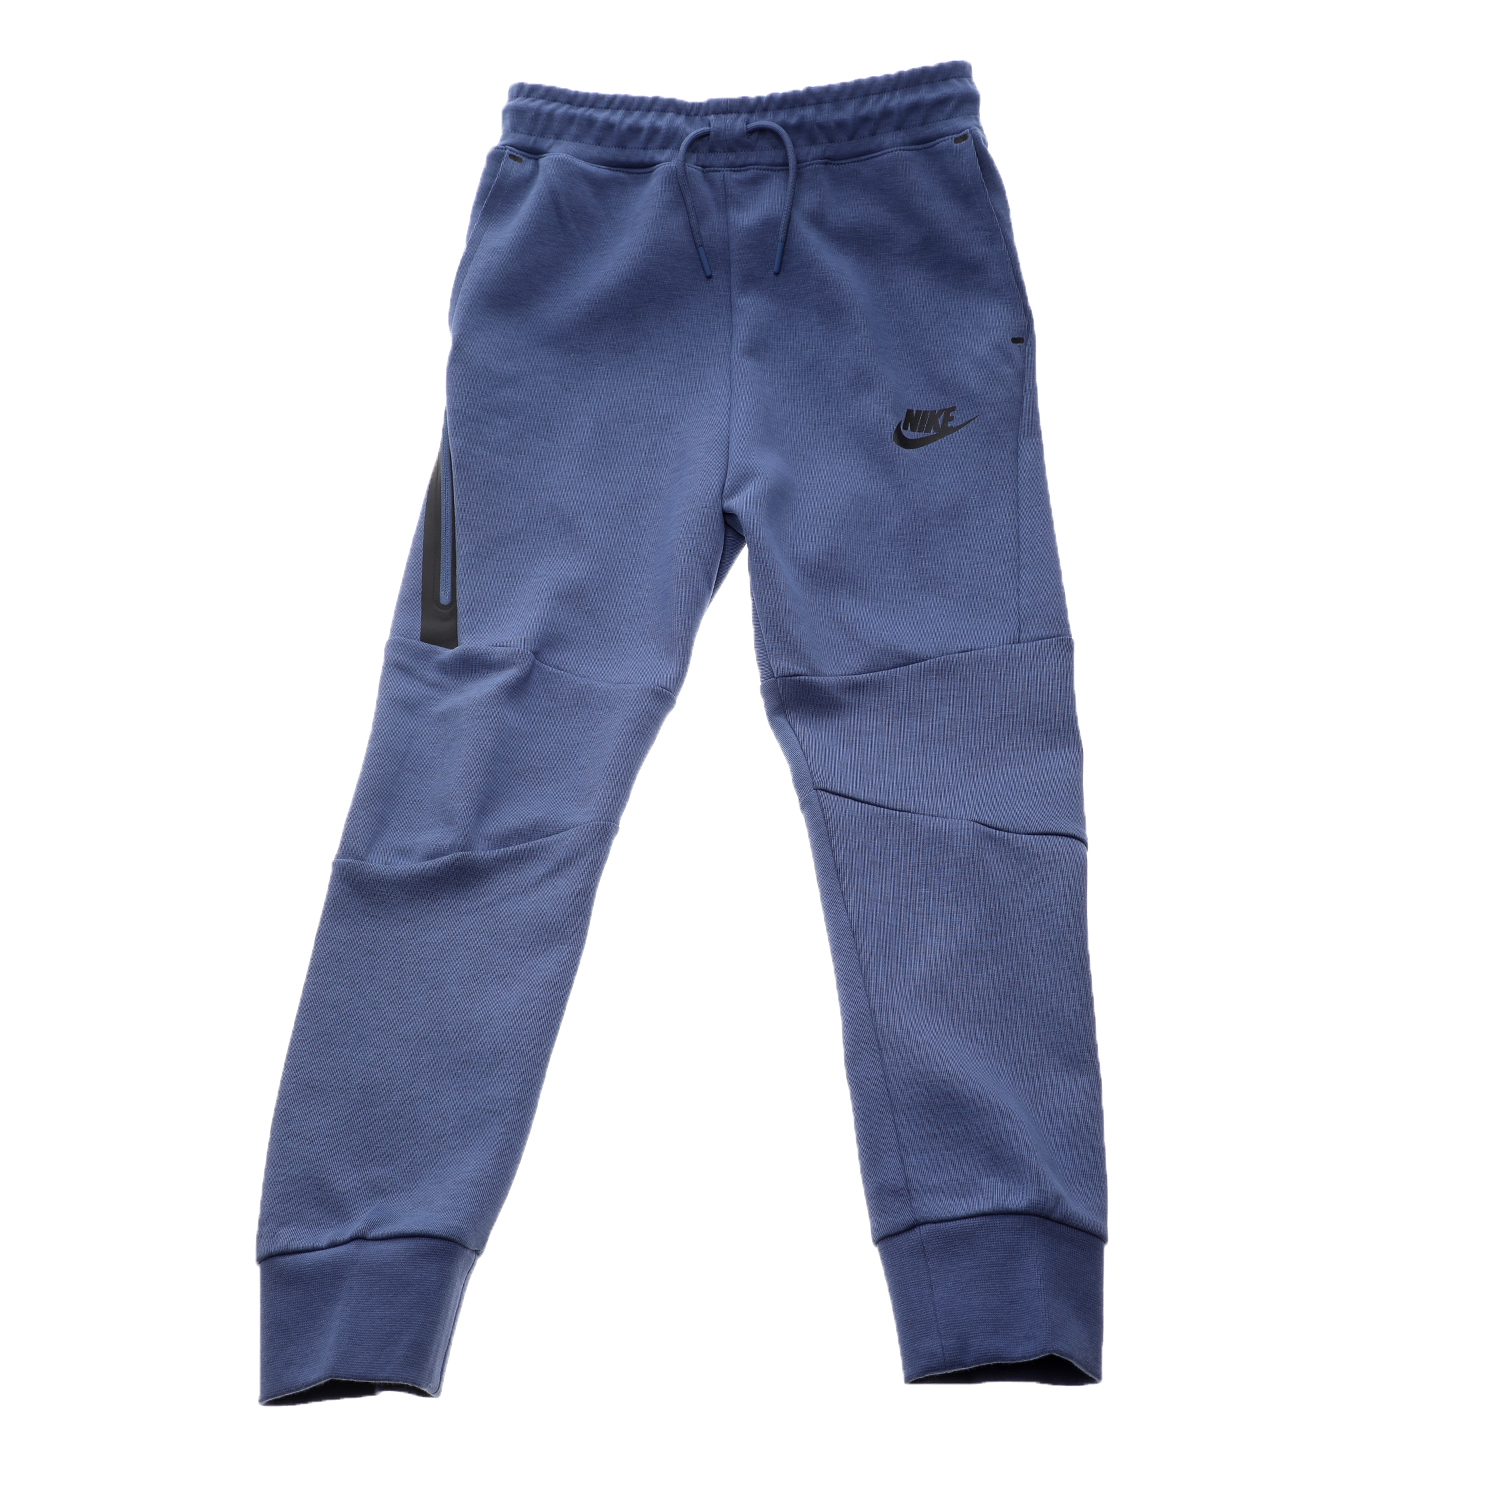 Παιδικά/Boys/Ρούχα/Αθλητικά NIKE - Παιδικό παντελόνι φόρμας Nike NSW TCH FLC μοβ